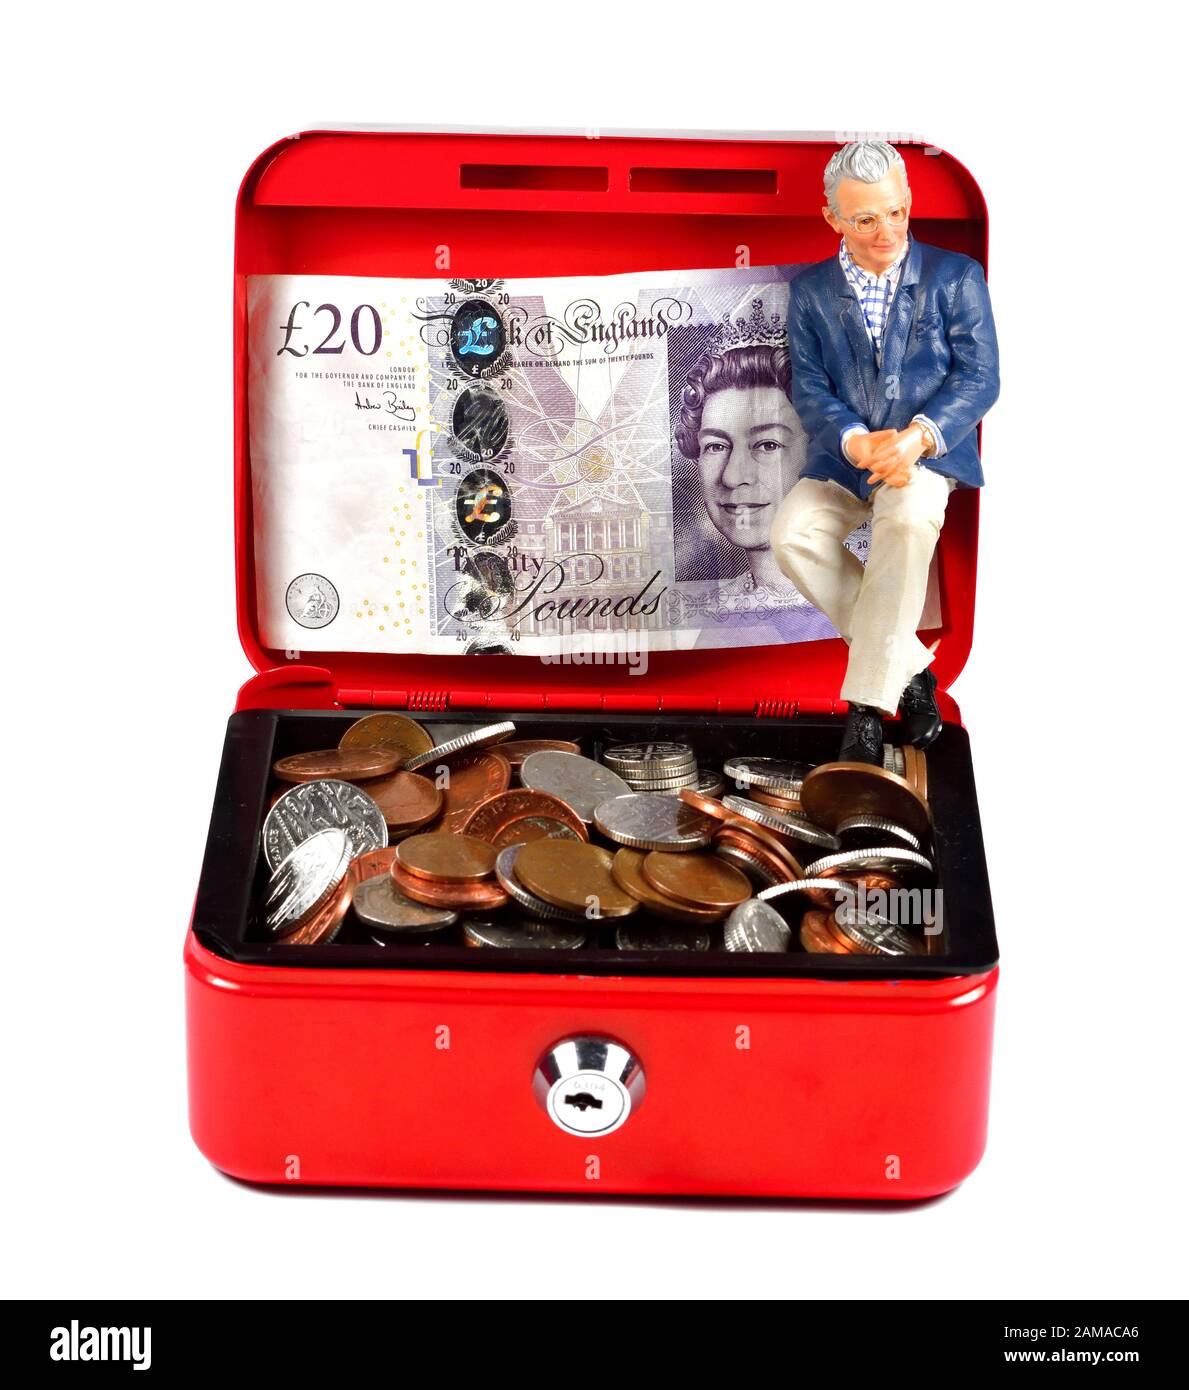 Single Pensionato maschio figurine seduto in una scatola di cassa rossa, concetto di risparmio pensione Foto Stock